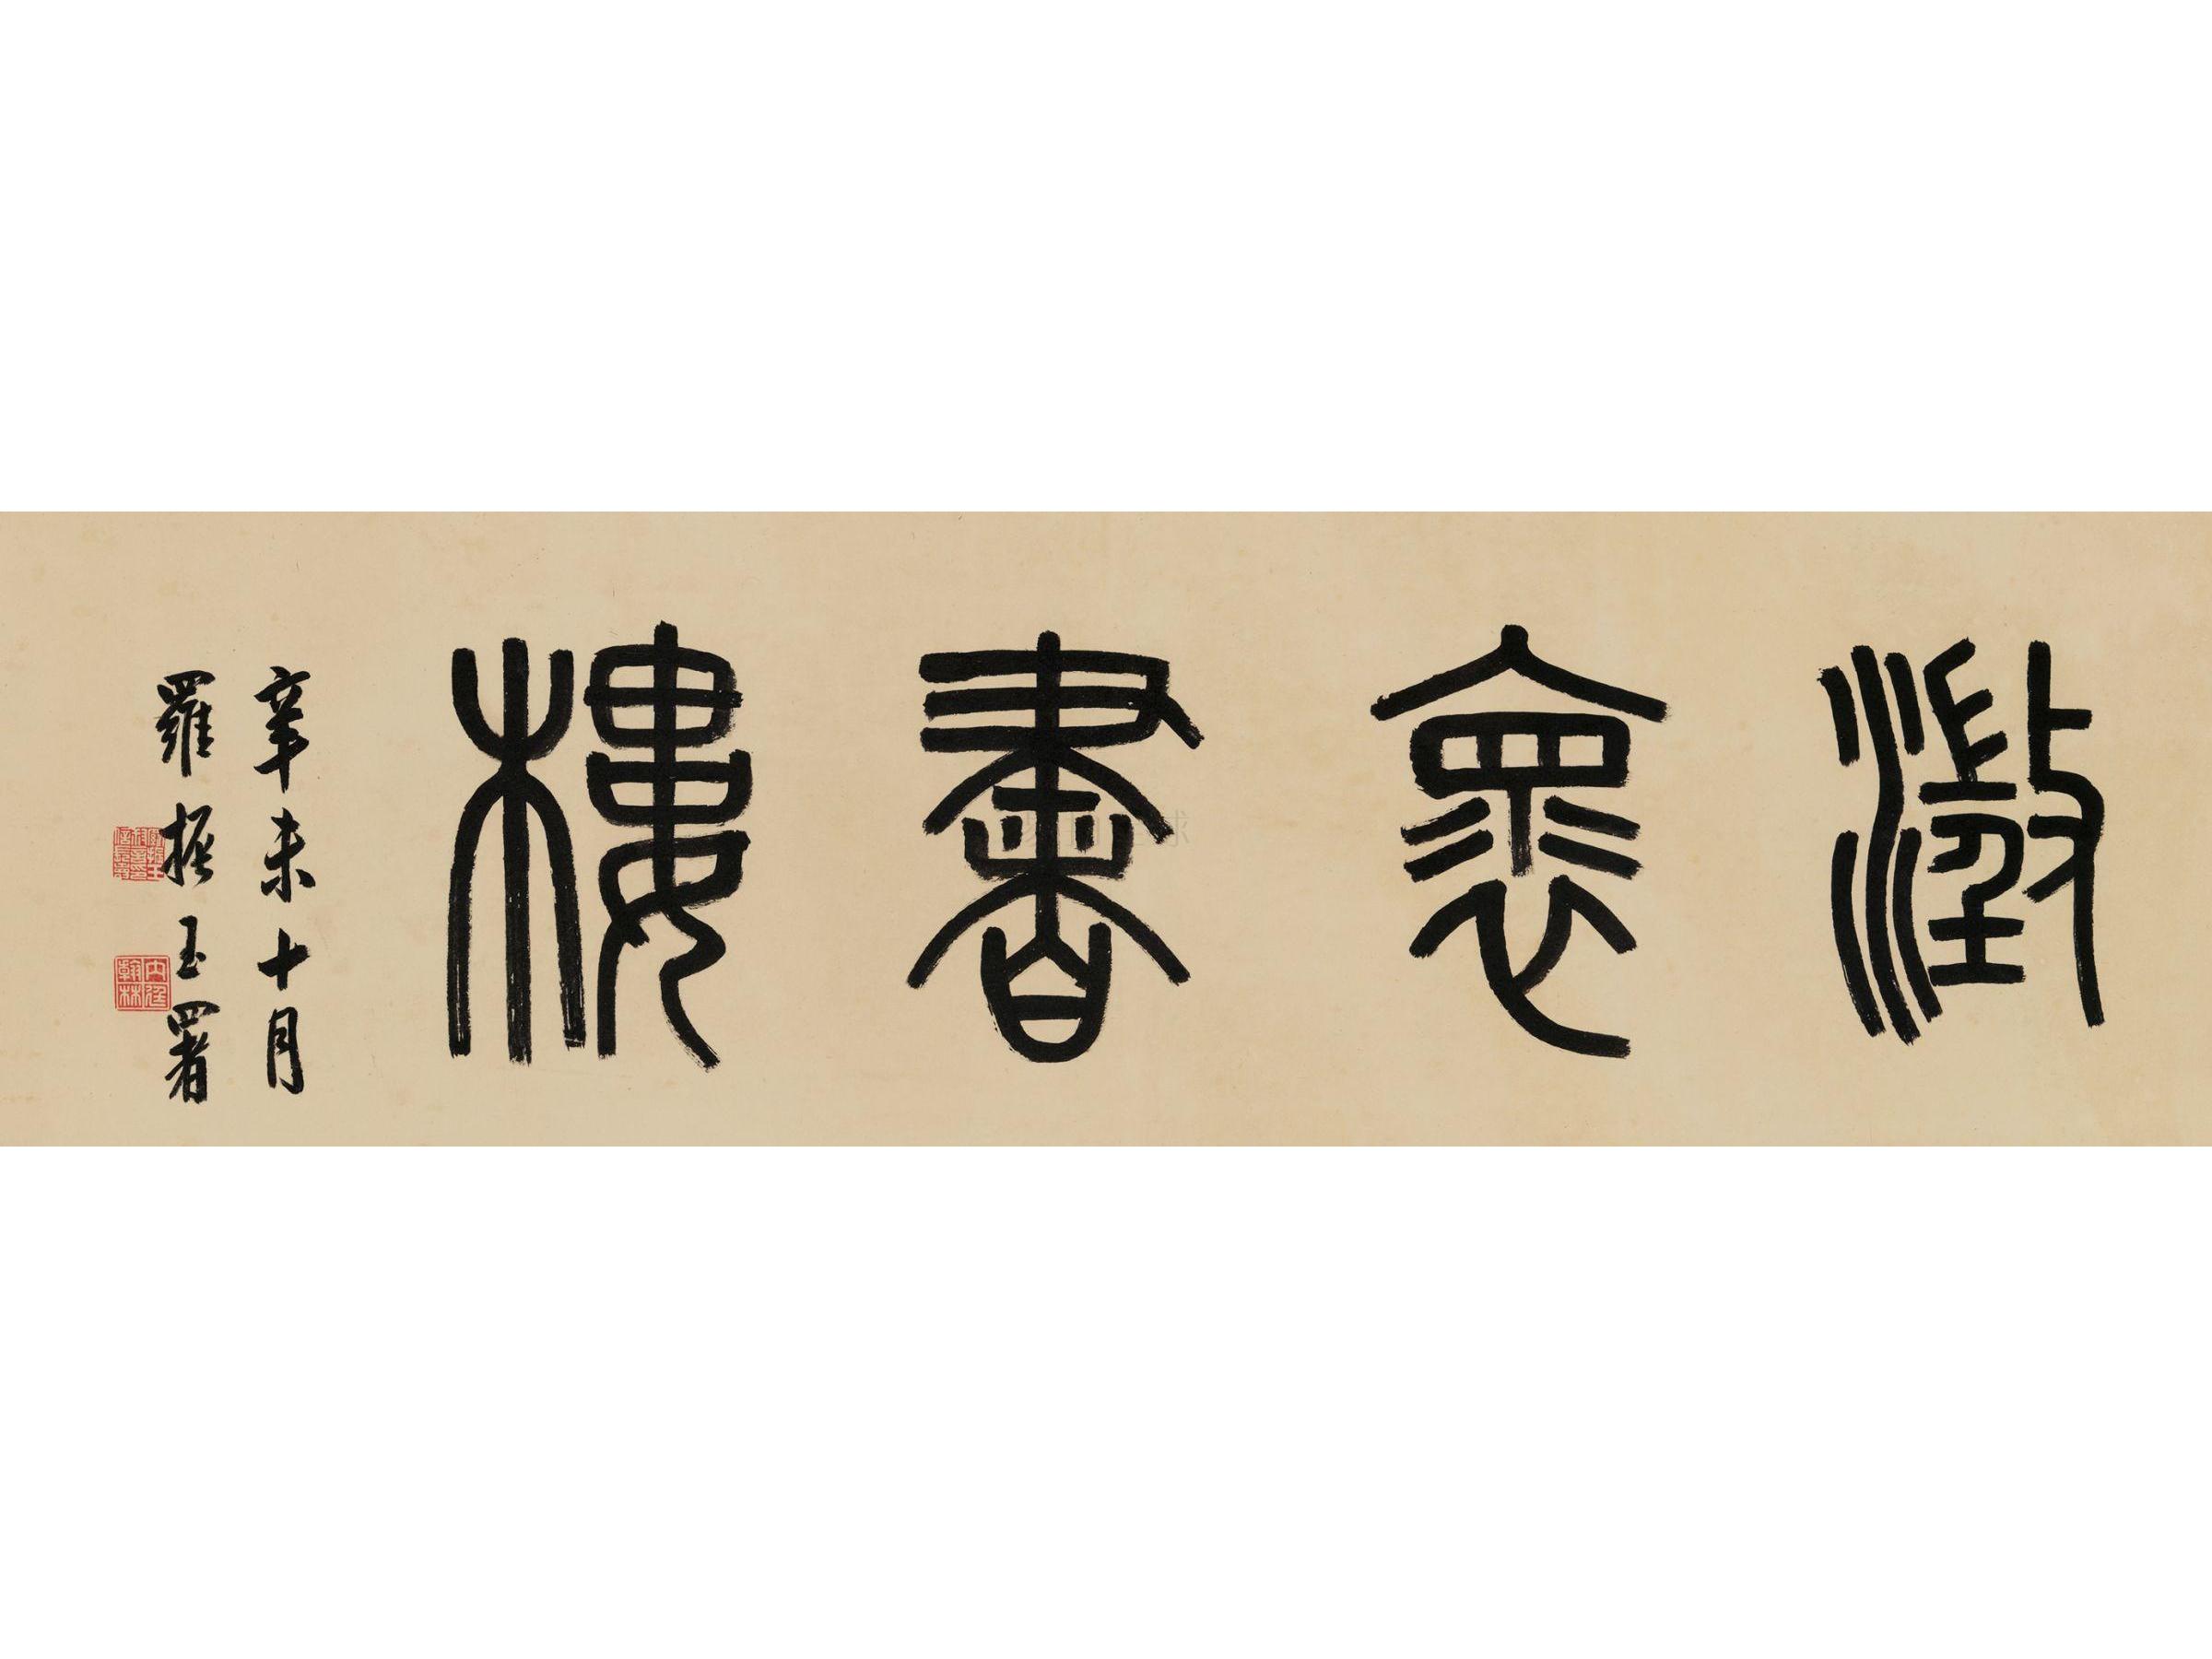 罗振玉(1866-1940) 篆书"澂怀书楼"